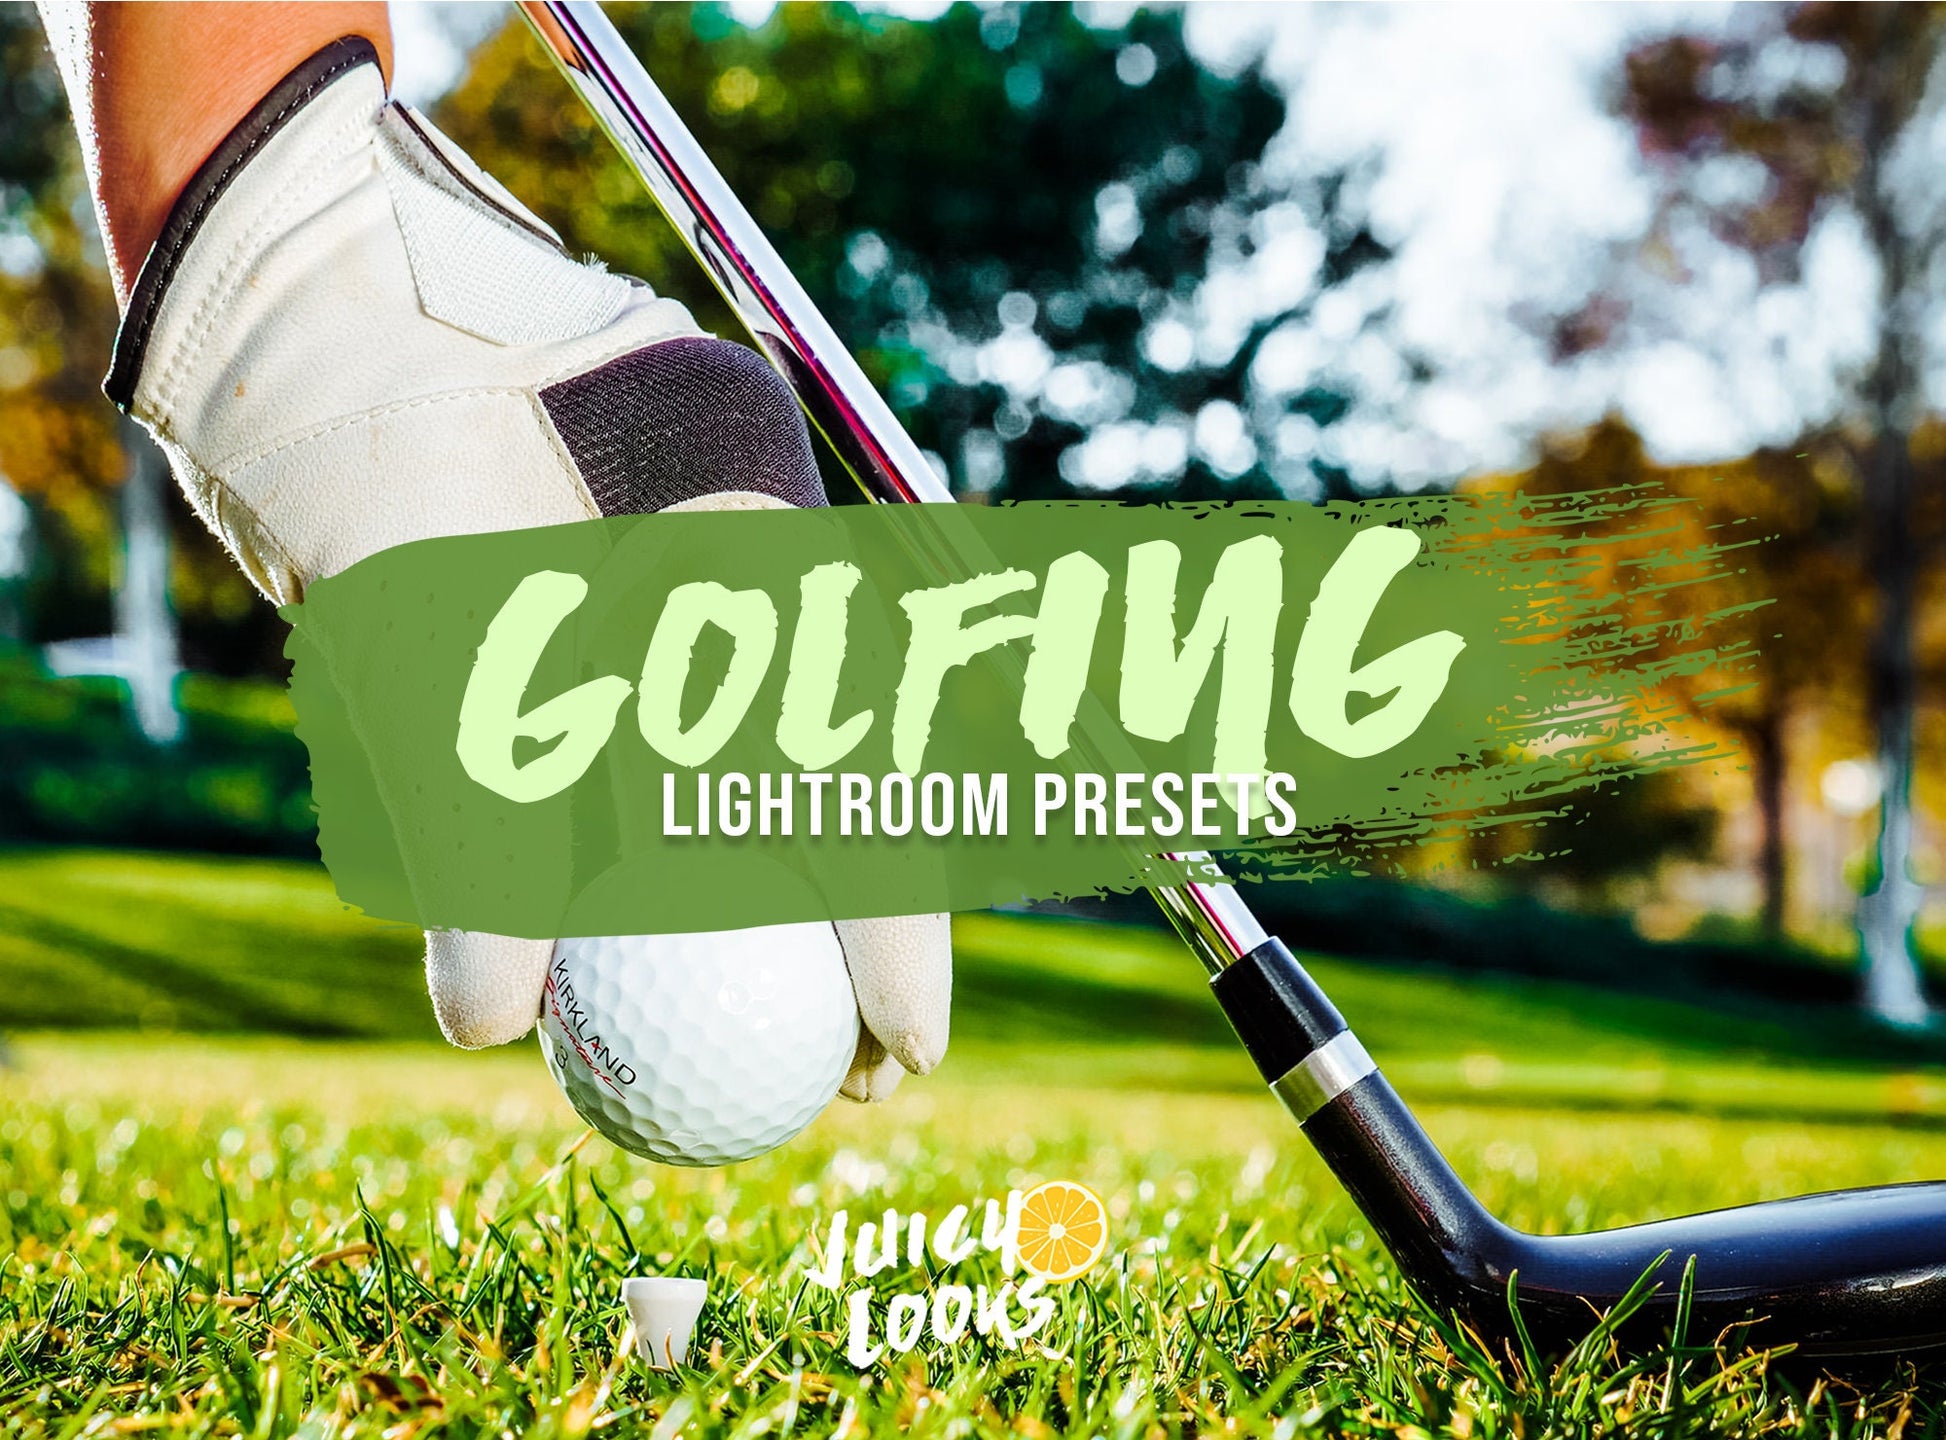 Golfing Lightroom Presets for Mobile & Desktop - Juicy Looks Presets